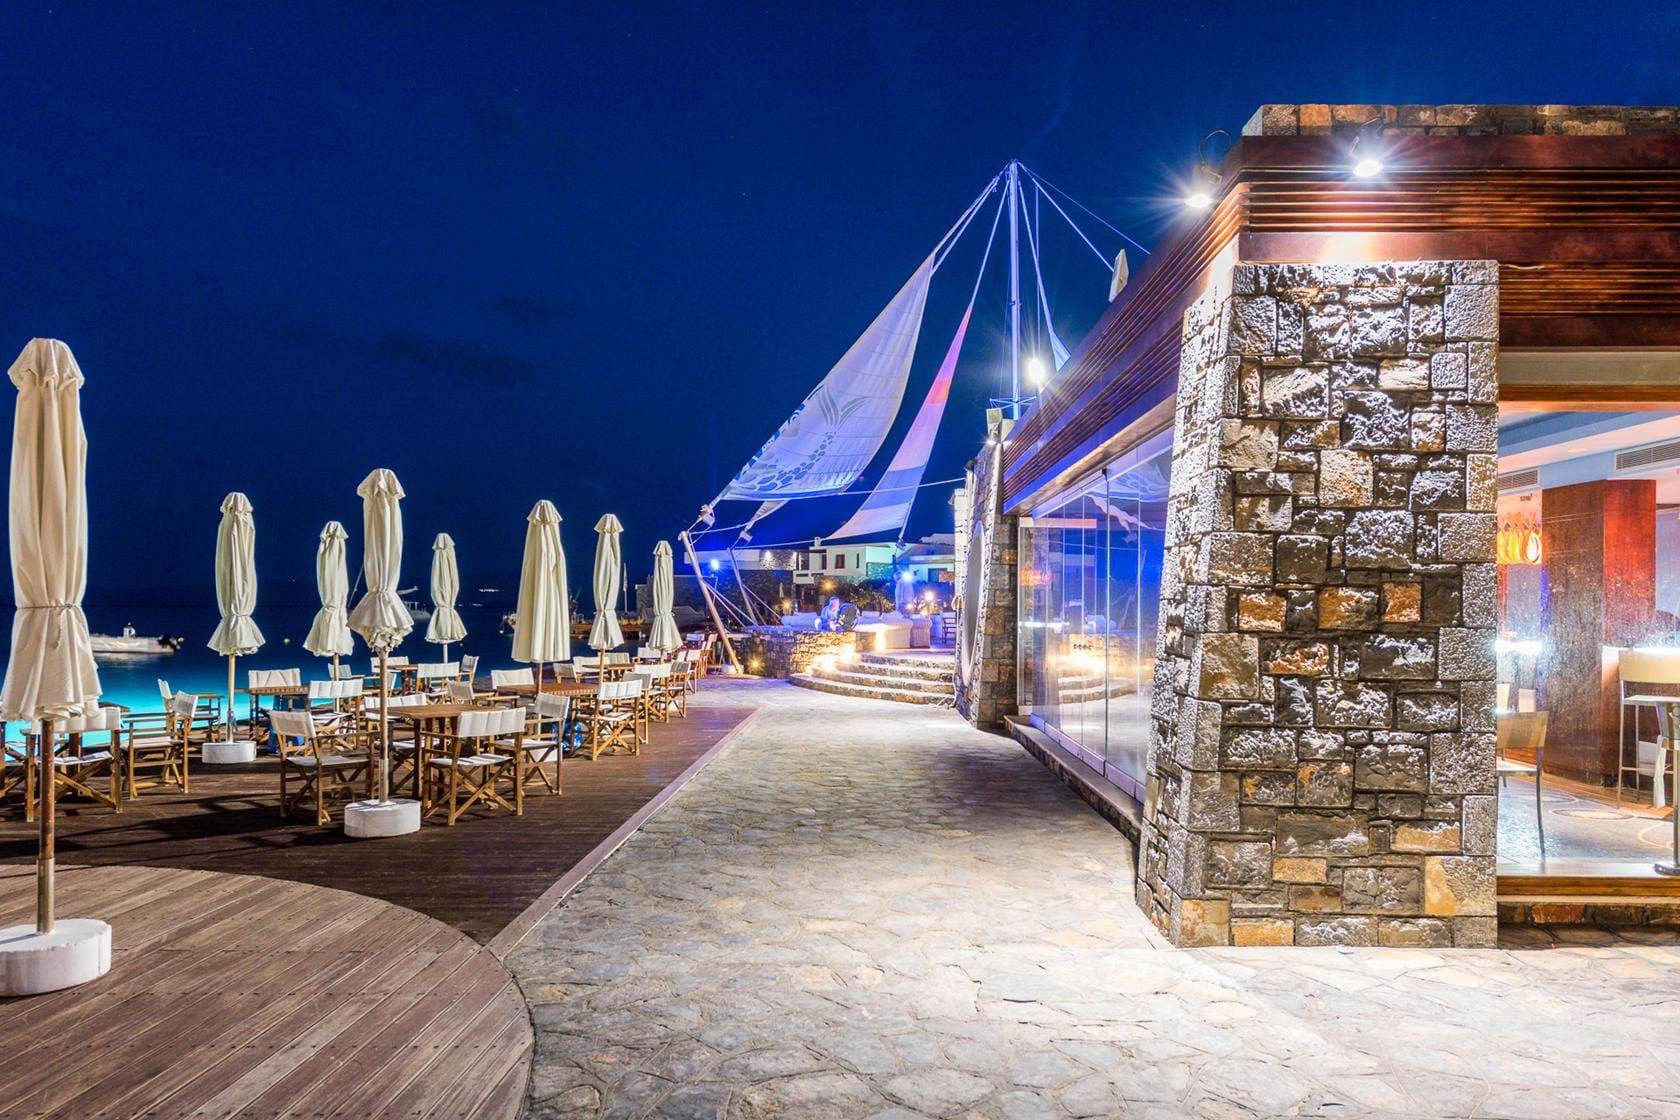 Restaurant de l'Hôtel Elounda Bay 5étoiles situé à Elounda proche d'Aghios Nicolaos en Crète